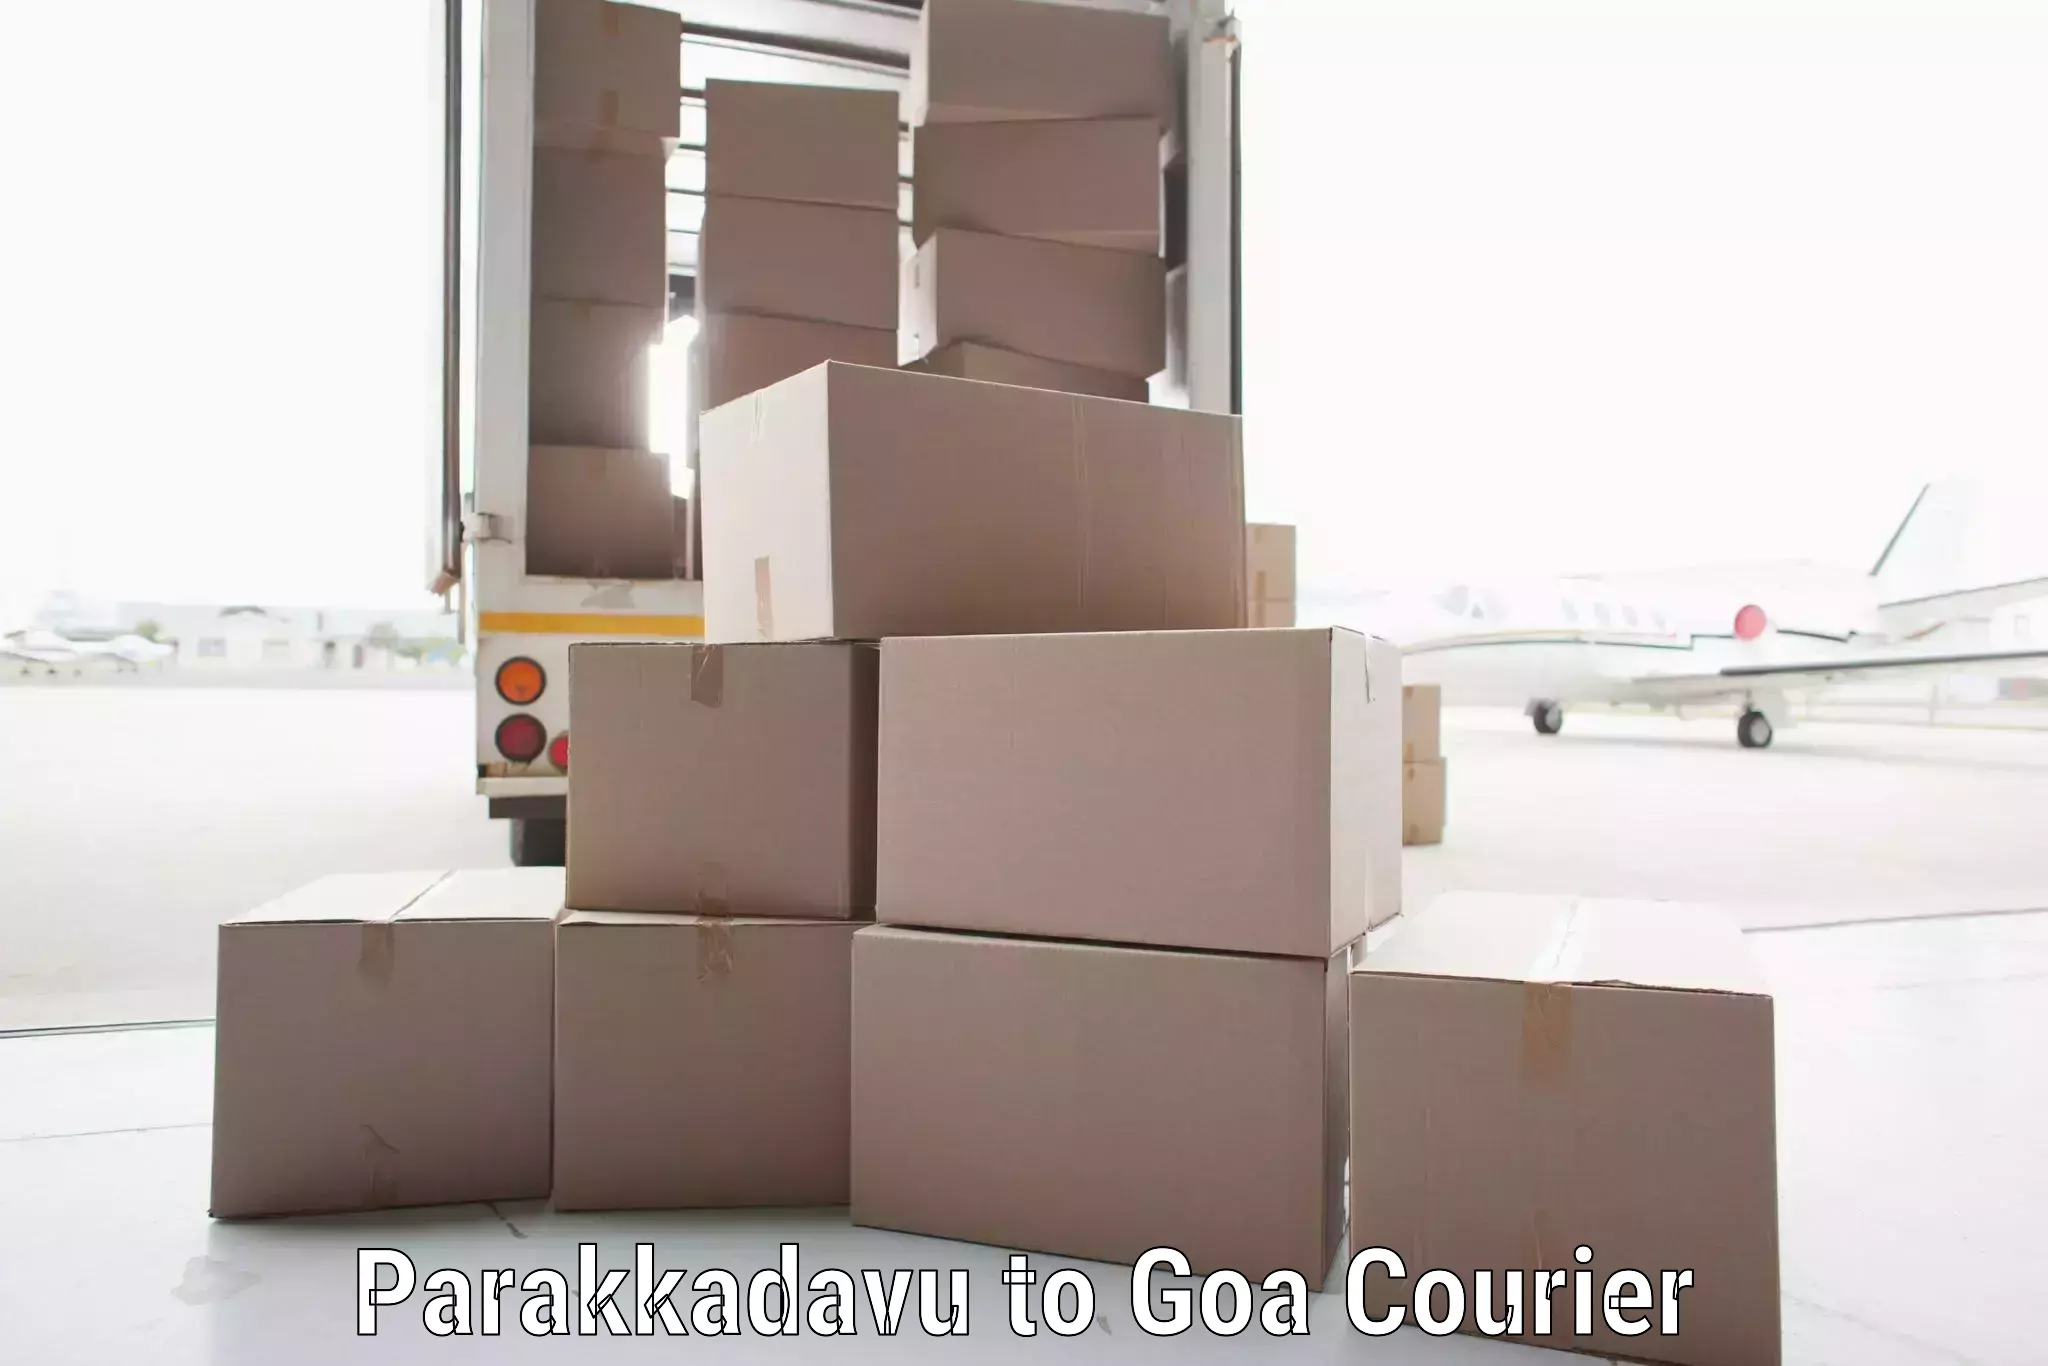 Comprehensive freight services Parakkadavu to Margao